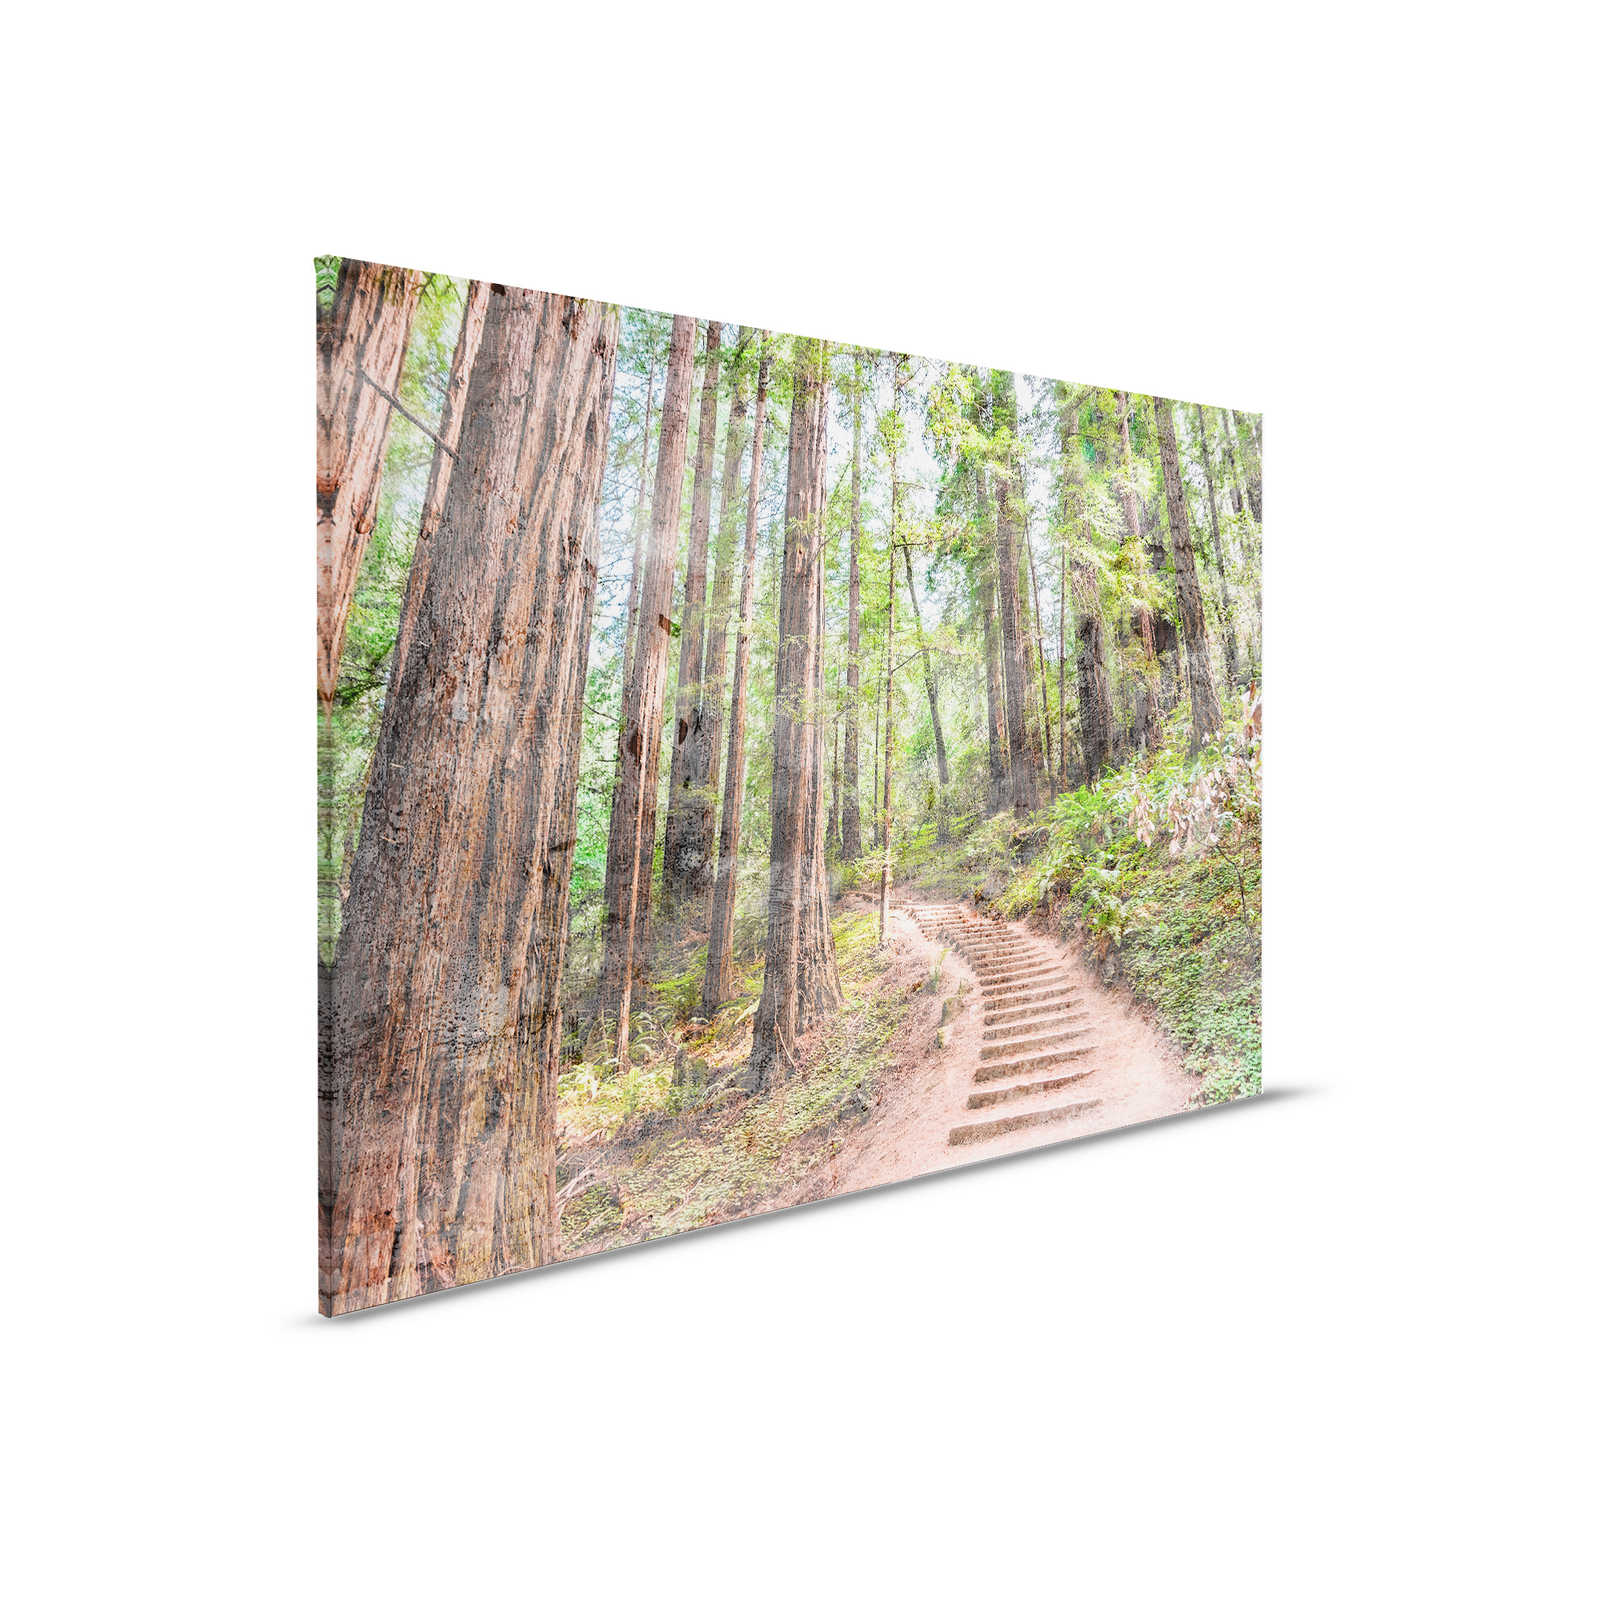 Tela con scale di legno attraverso la foresta | marrone, verde, blu - 0,90 m x 0,60 m
